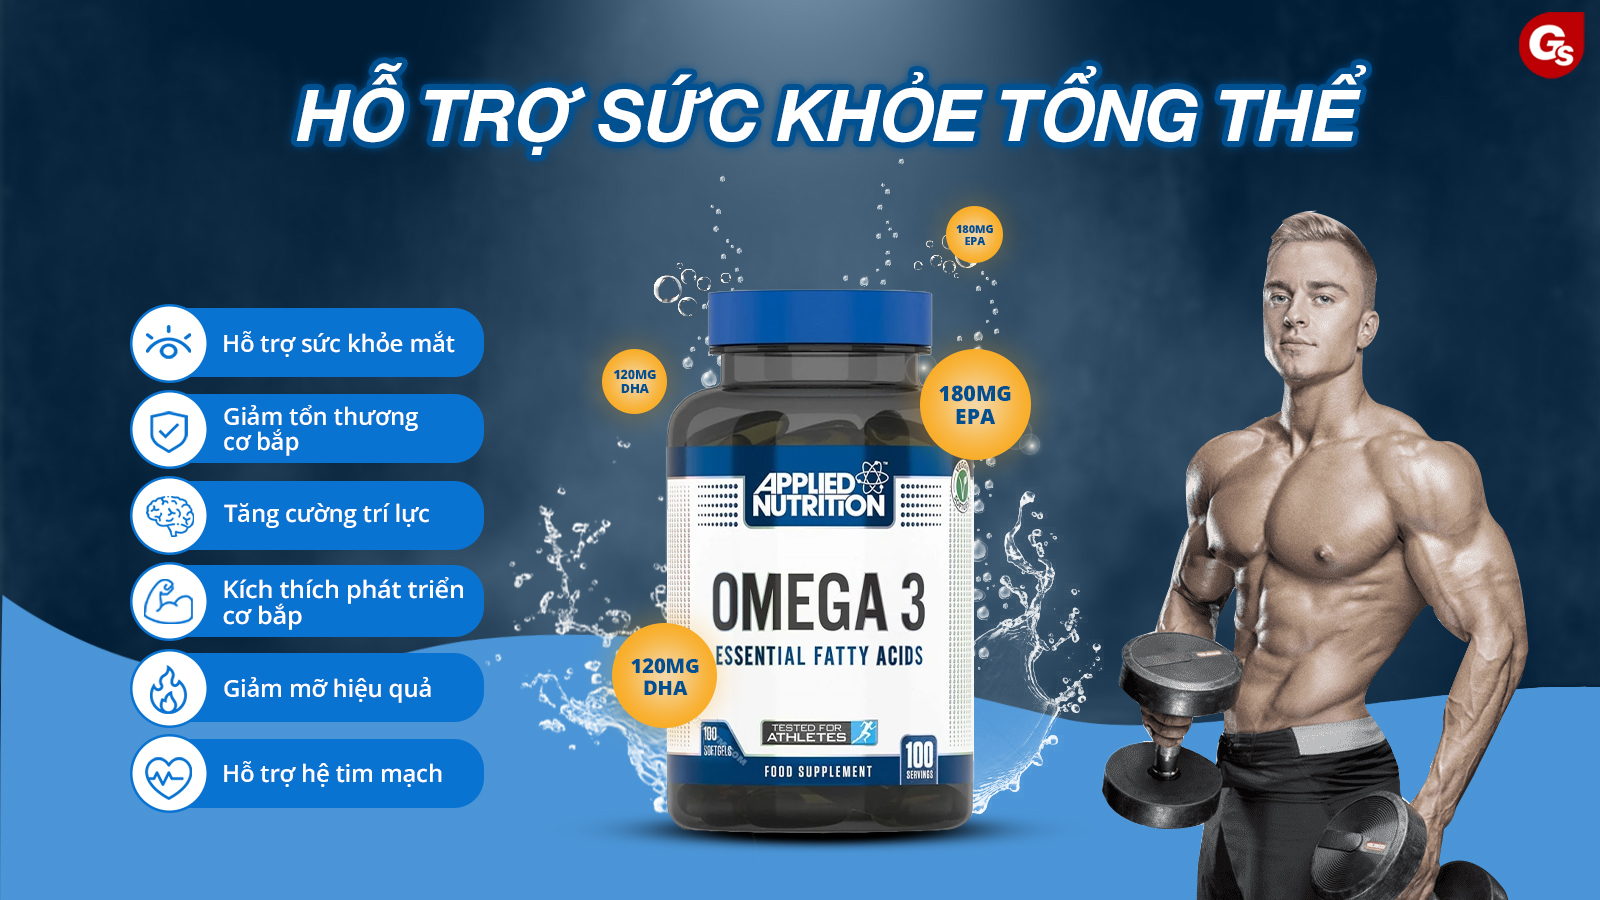 applied-nutrition-omega-3-ho-tro-suc-khoe-toan-dien-gymstore